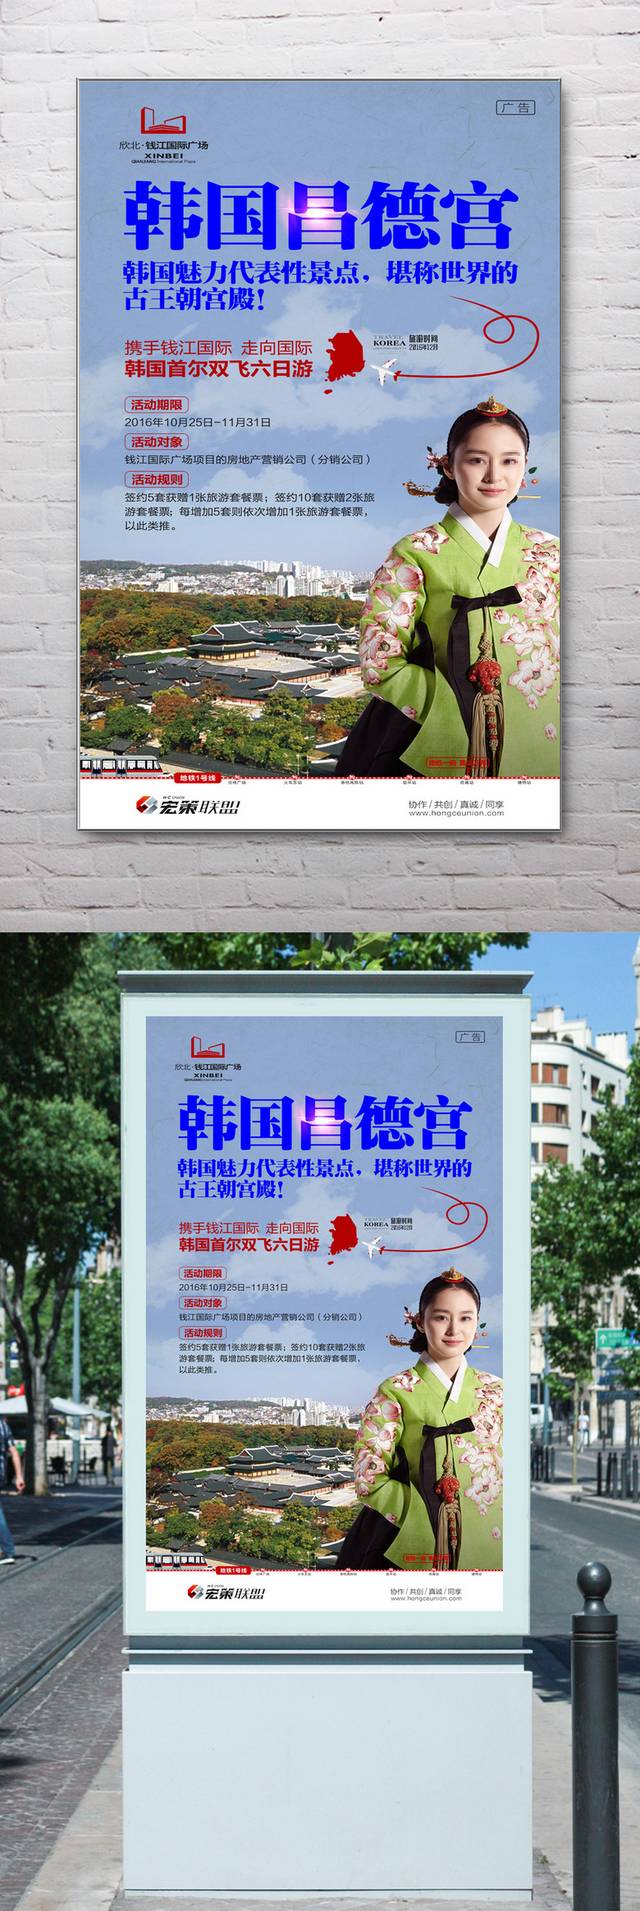 韩国昌德宫旅游海报模板